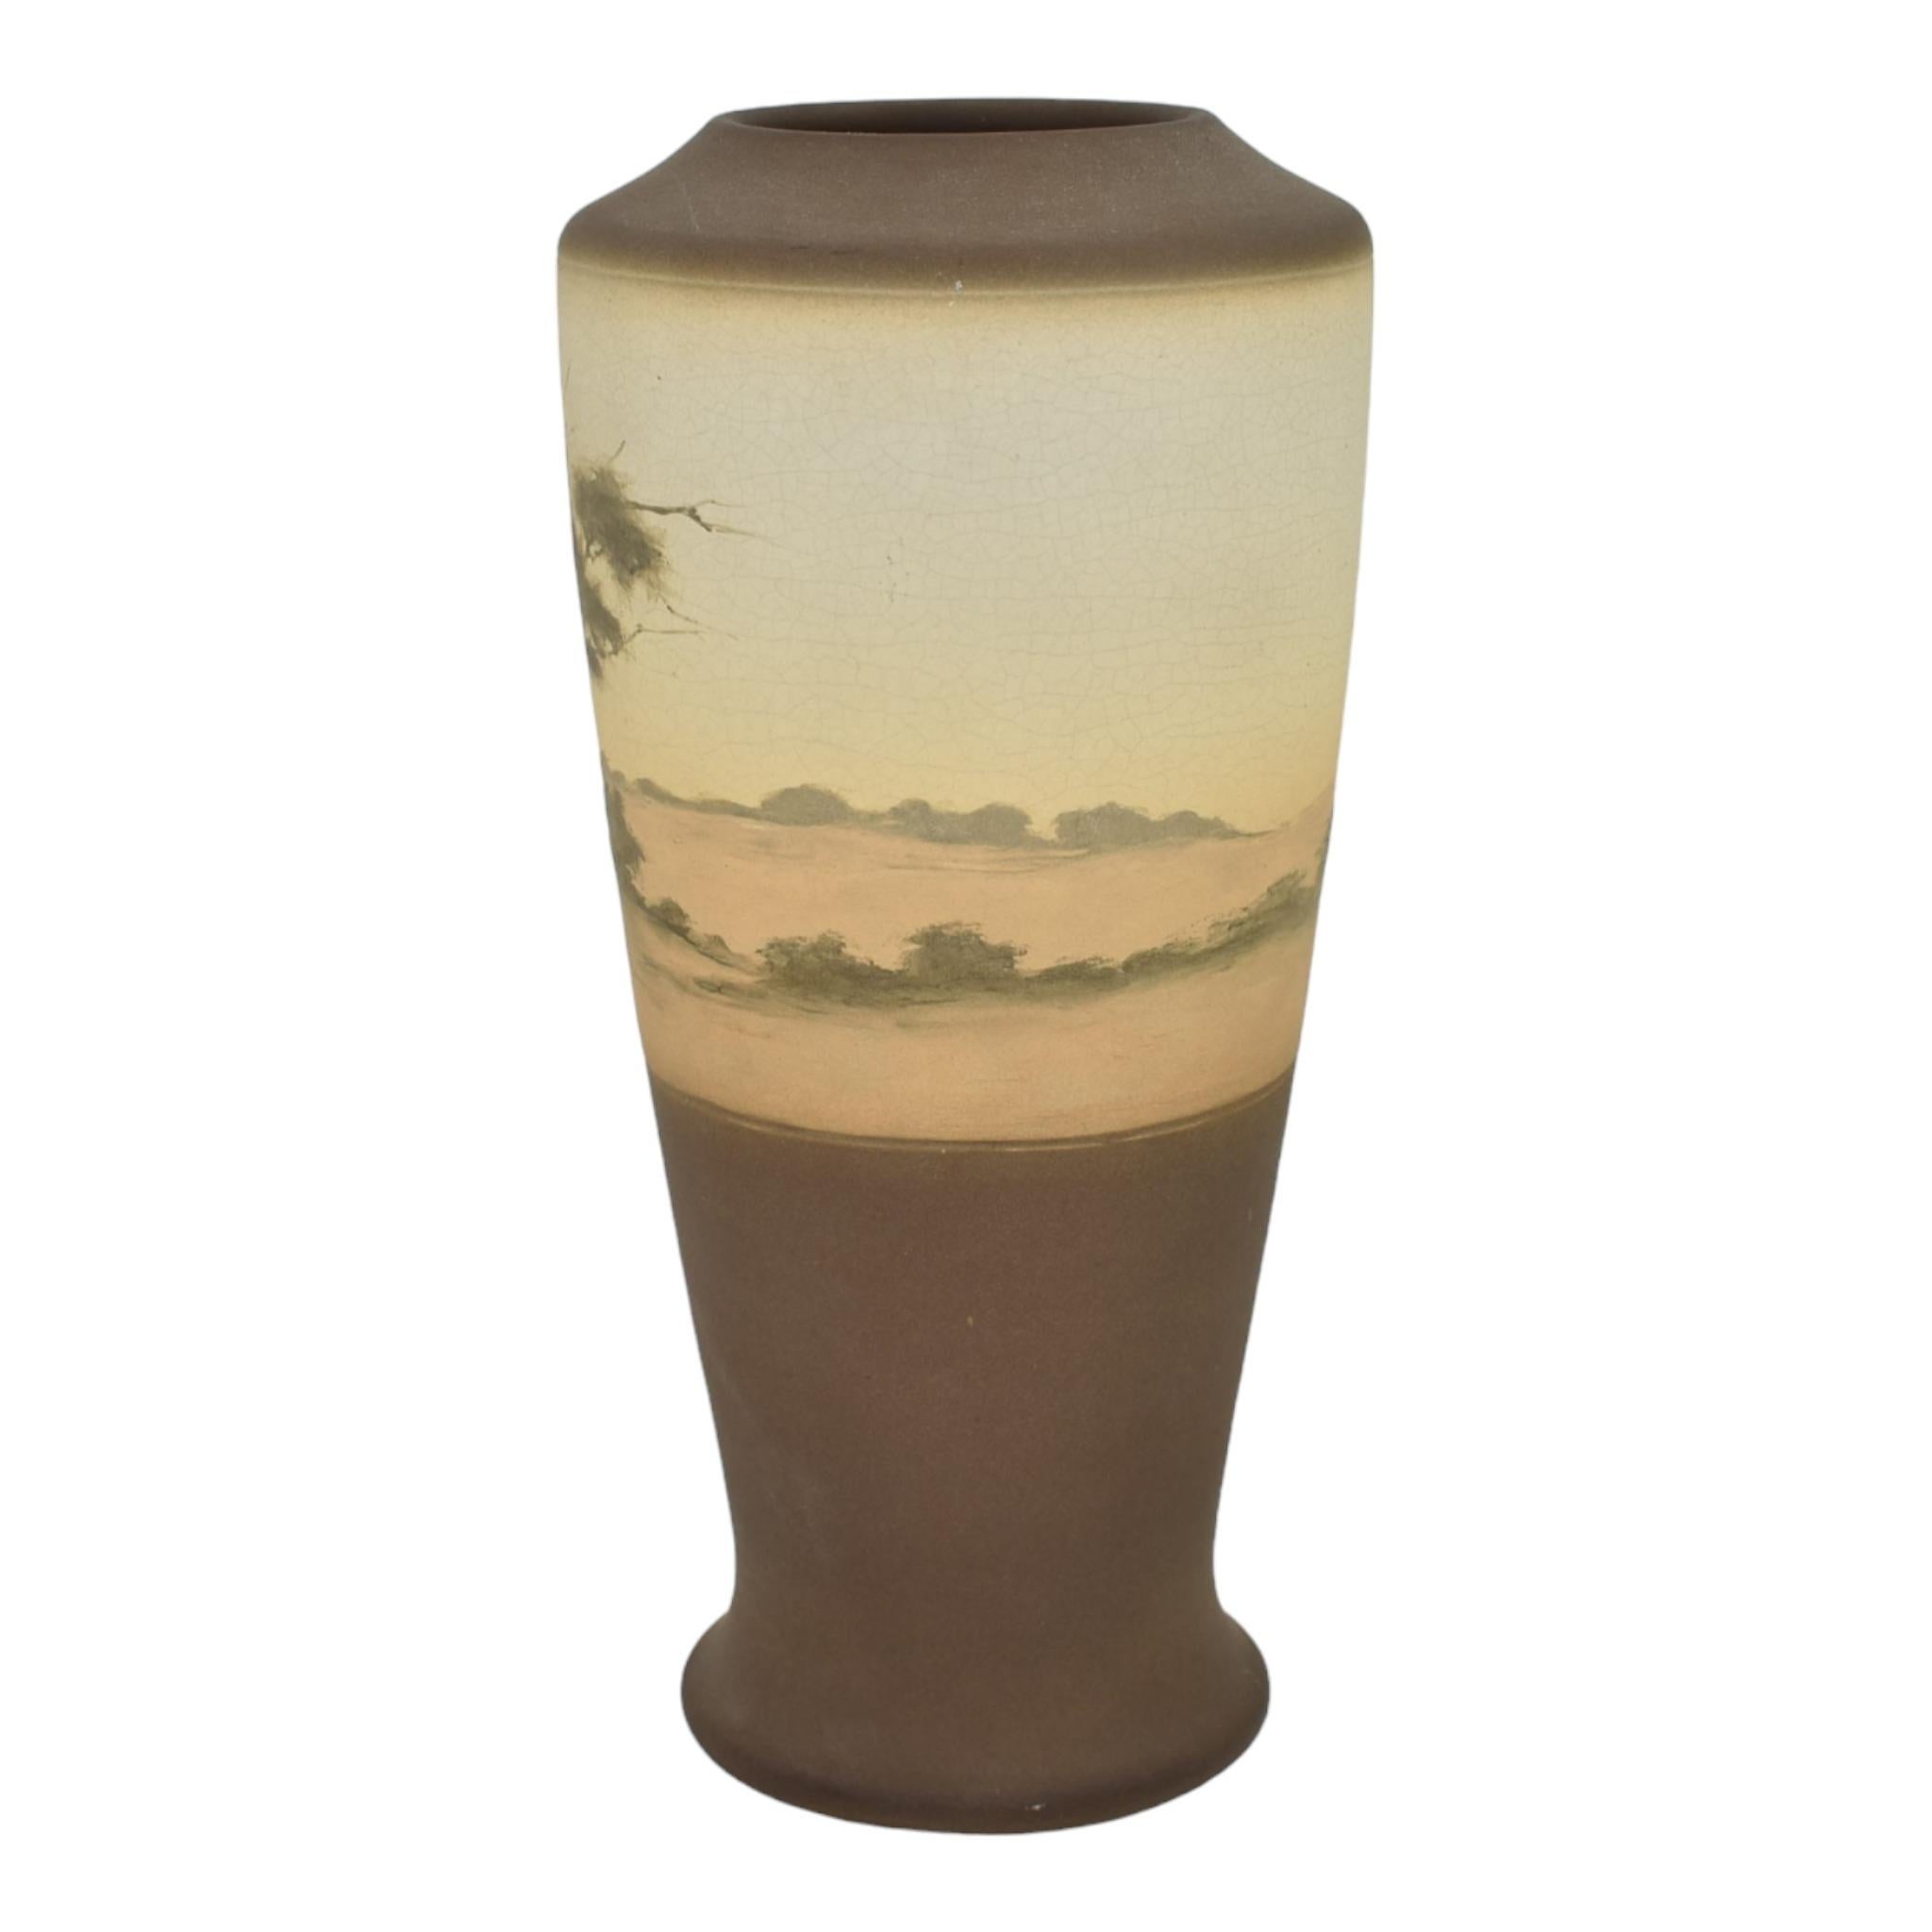 Rookwood 1912 Art Pottery dekoriert grün Vellum Scenic Brown Vase 1663D Asbury 
Seltene und wunderschöne Vase aus grünem Vellum, handbemalt mit einer malerischen Landschaft von Lenore Asbury aus dem Jahr 1912. 
Wunderschöne Farben und hochwertige